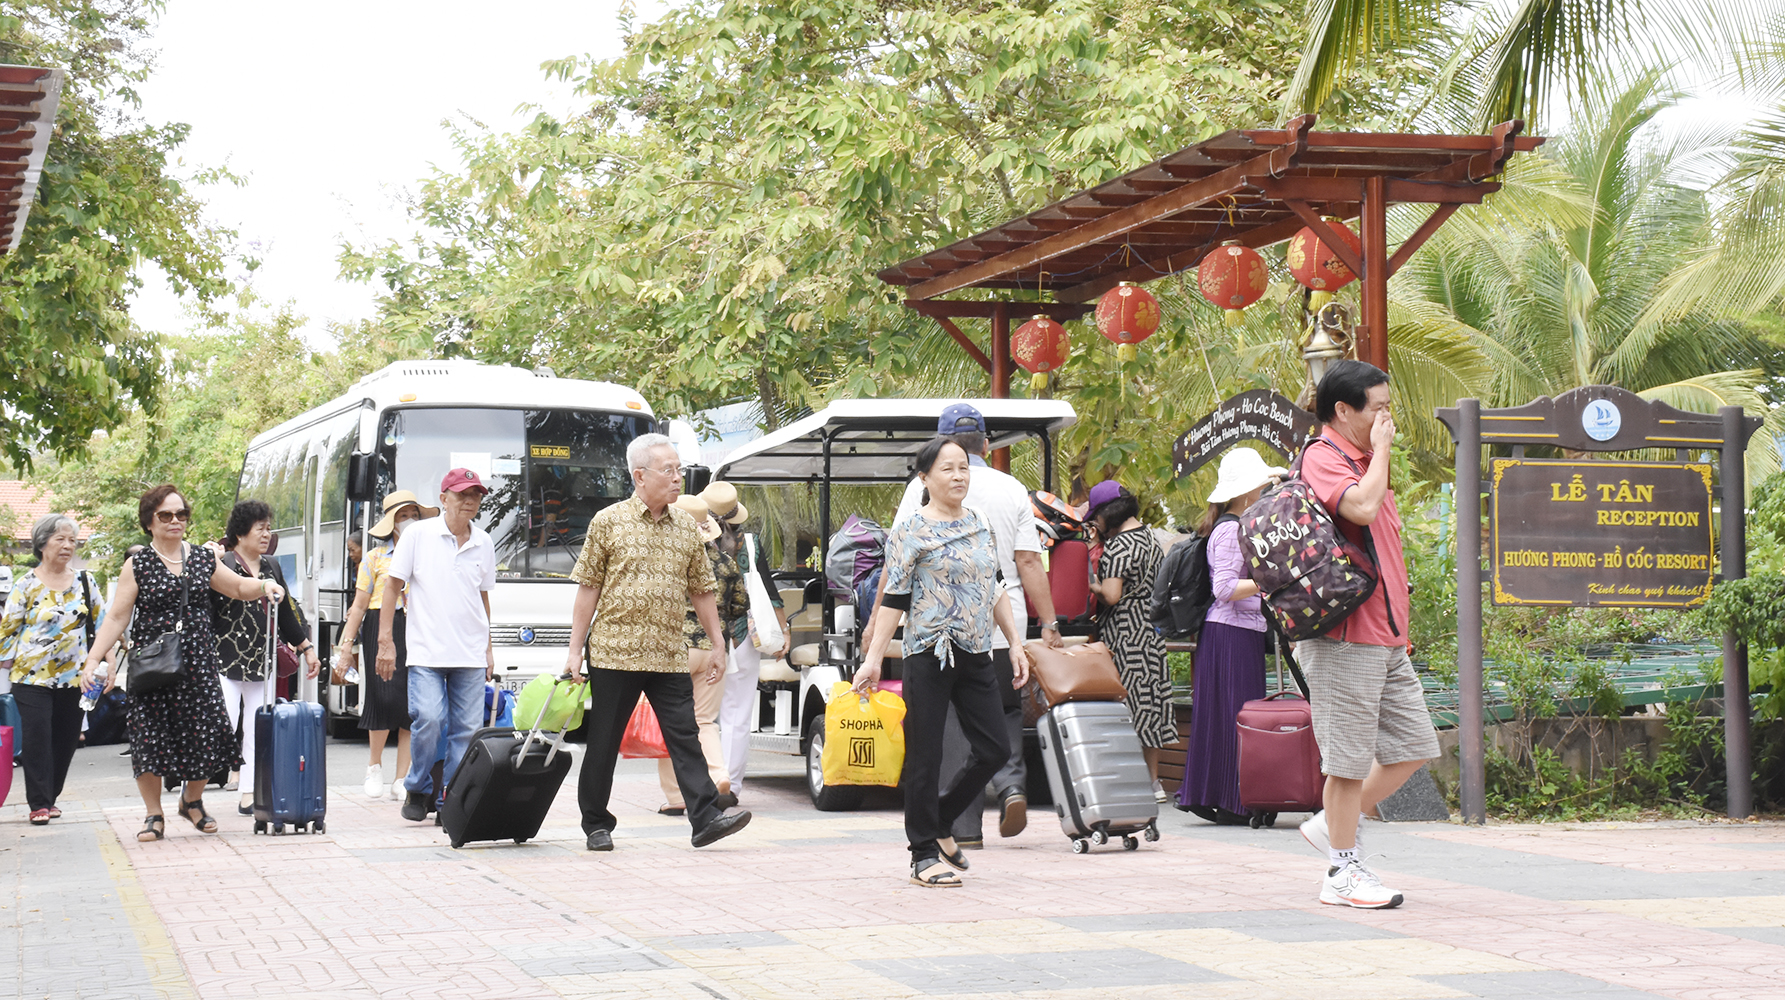 BR-VT khởi động chiến dịch kích cầu, giảm đến 80% giá dịch vụ. Trong ảnh: Du khách đến Hương Phong - Hồ Cốc Beach resort những ngày đầu tháng 6. Ảnh: MỸ LƯƠNG